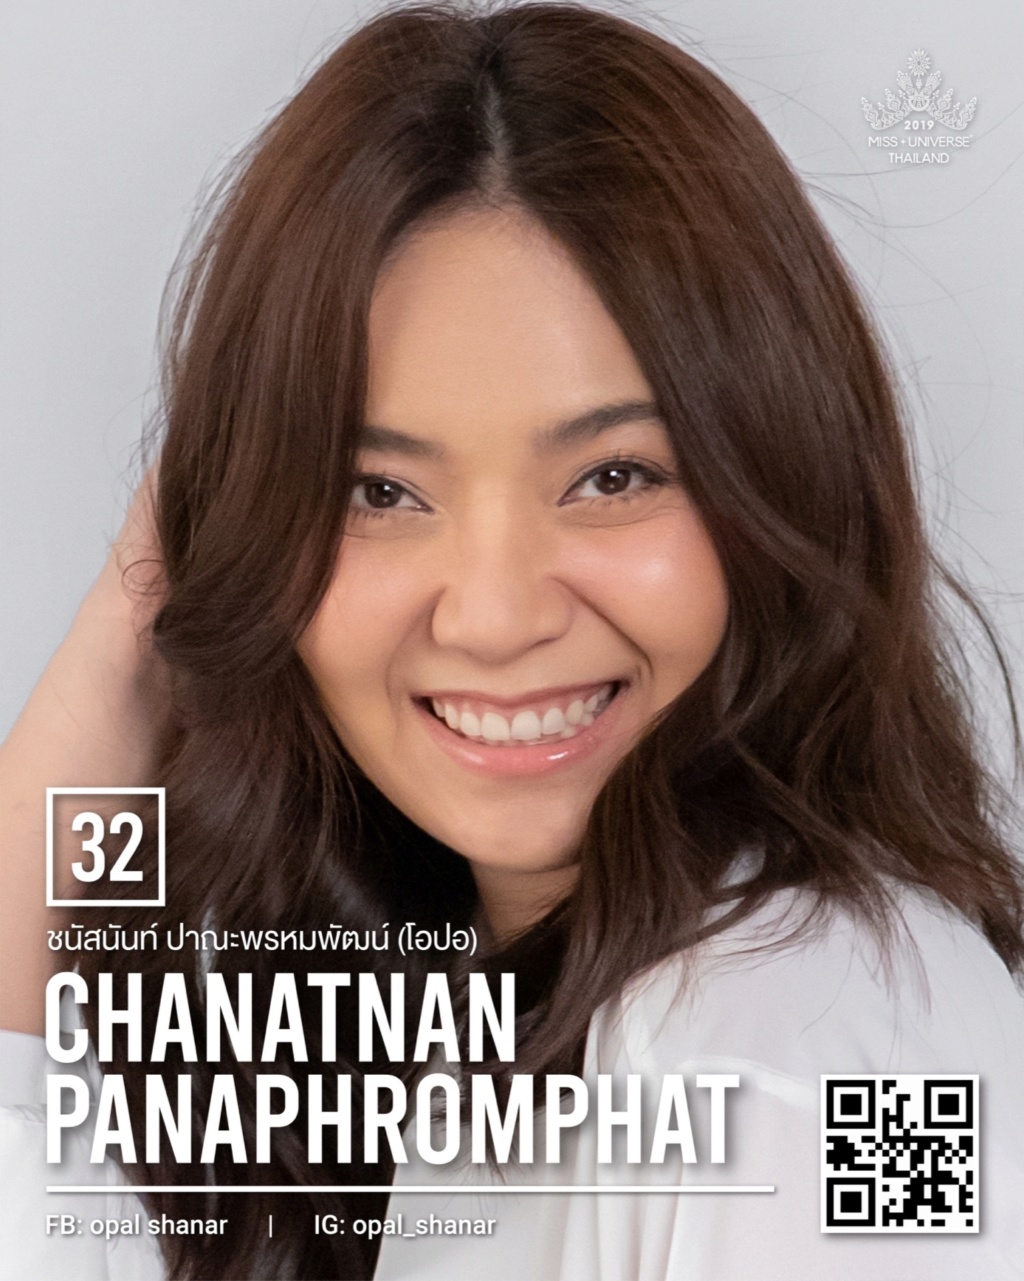 Miss Universe THAILAND 2019 - PORTRAITS!  - Page 2 11222